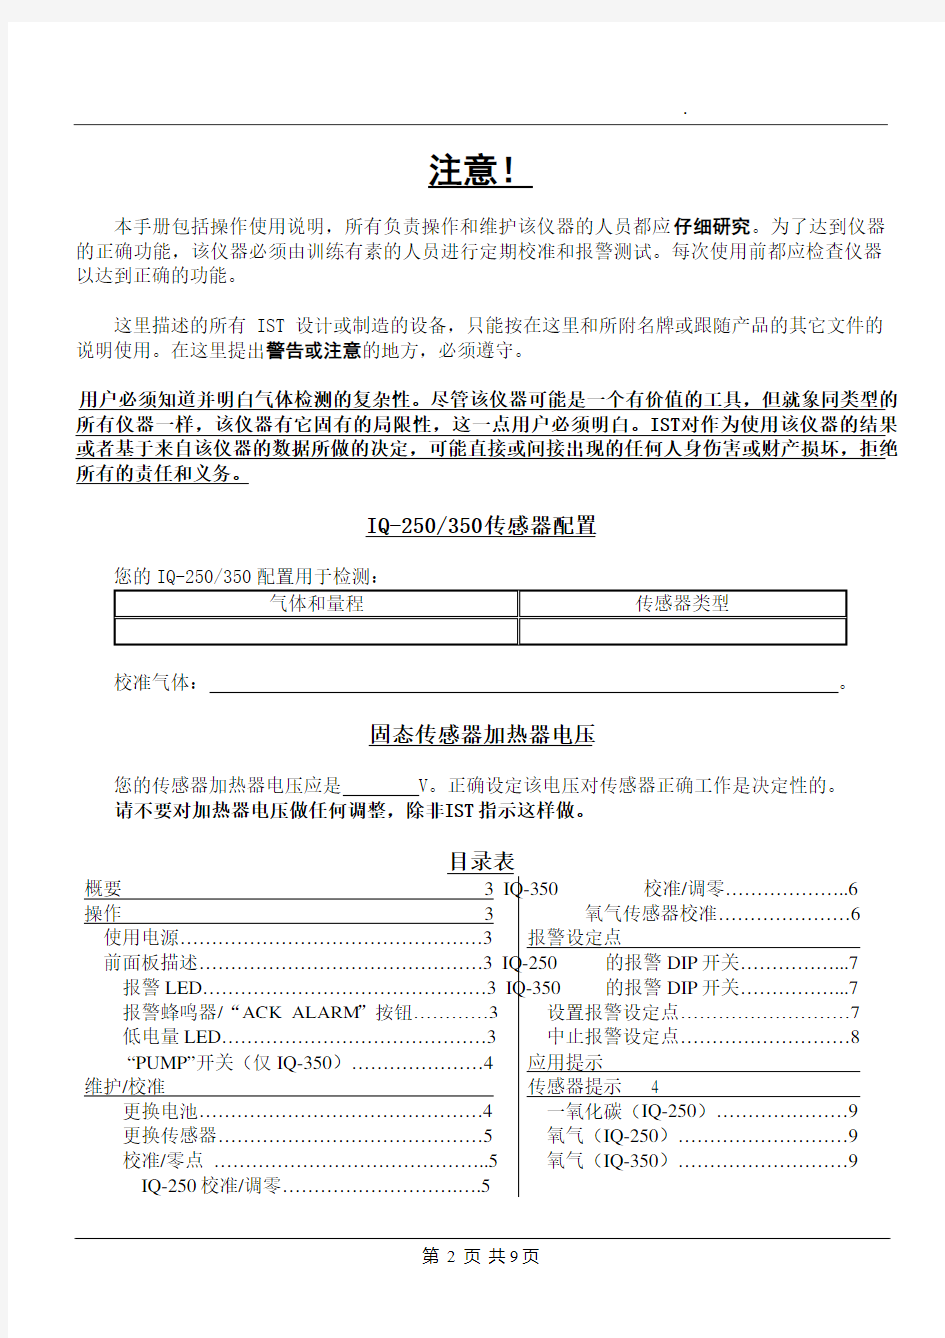 IQ350中文操作手册